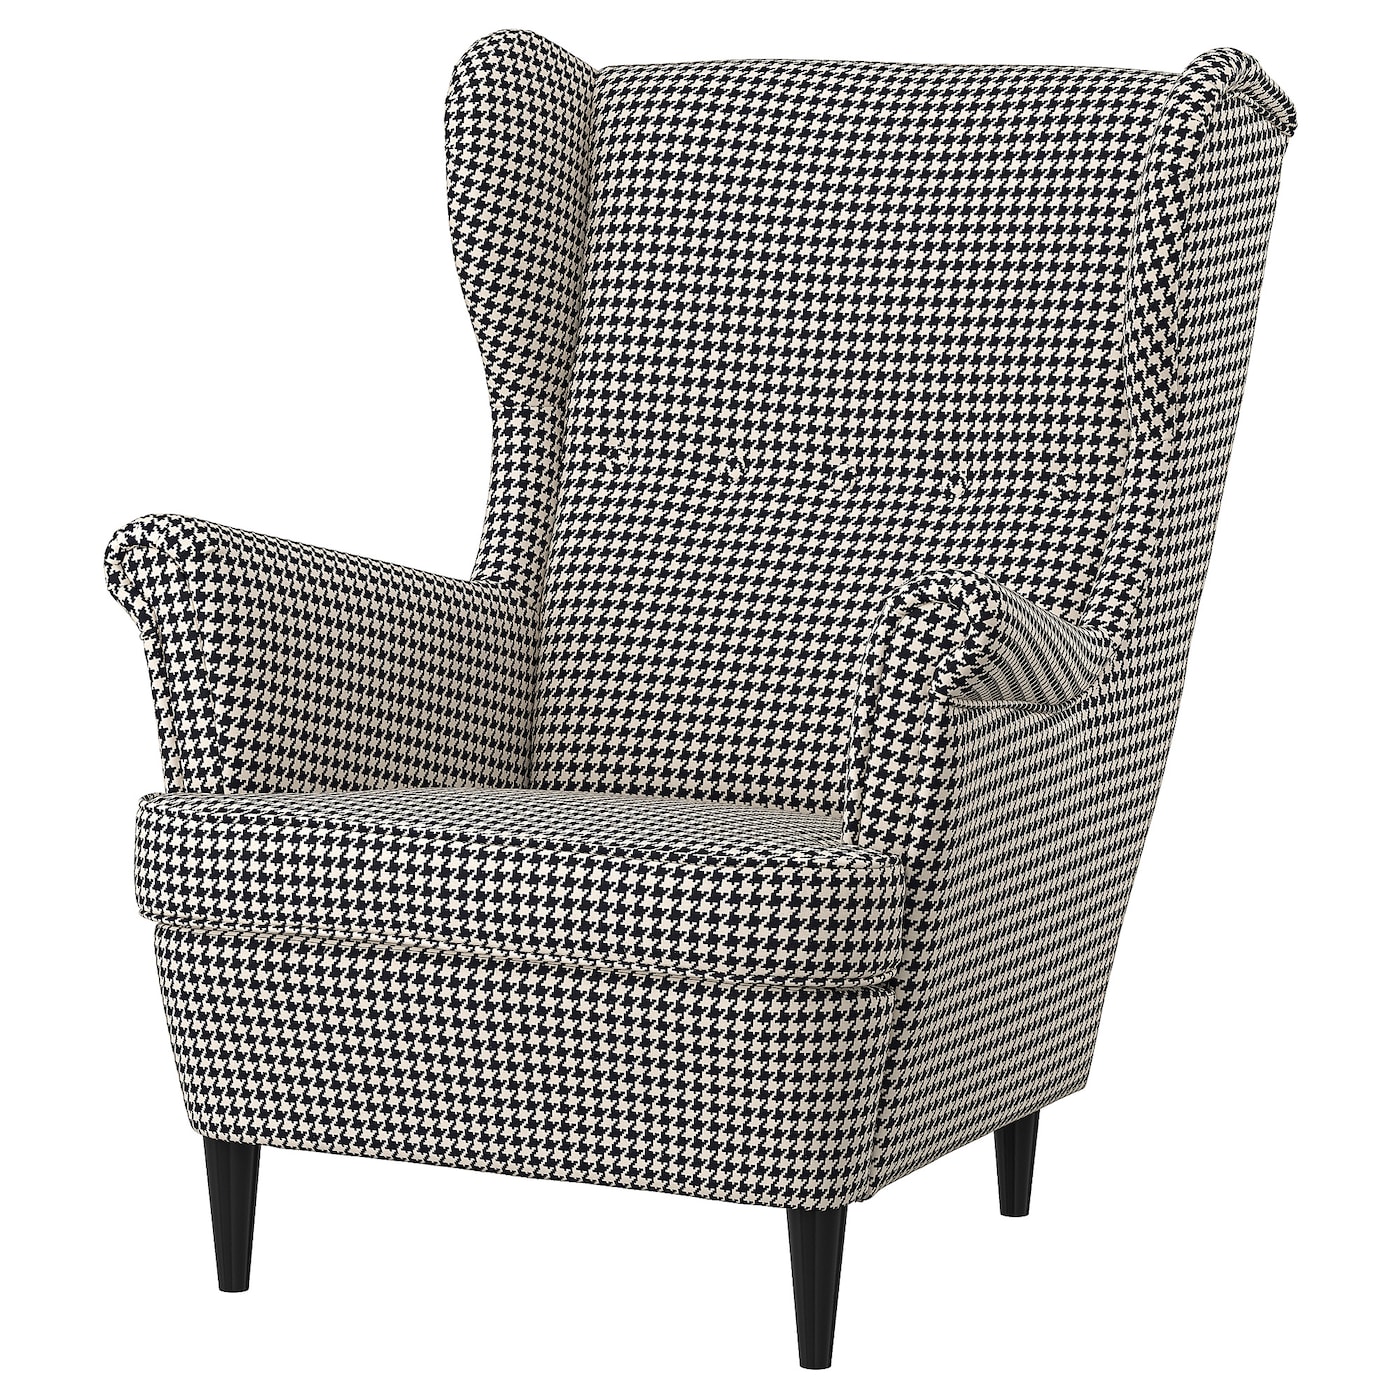 Кресло с подлокотниками - IKEA STRANDMON, 82х96х101 см, черный/белый, СТРАНДМОН ИКЕА